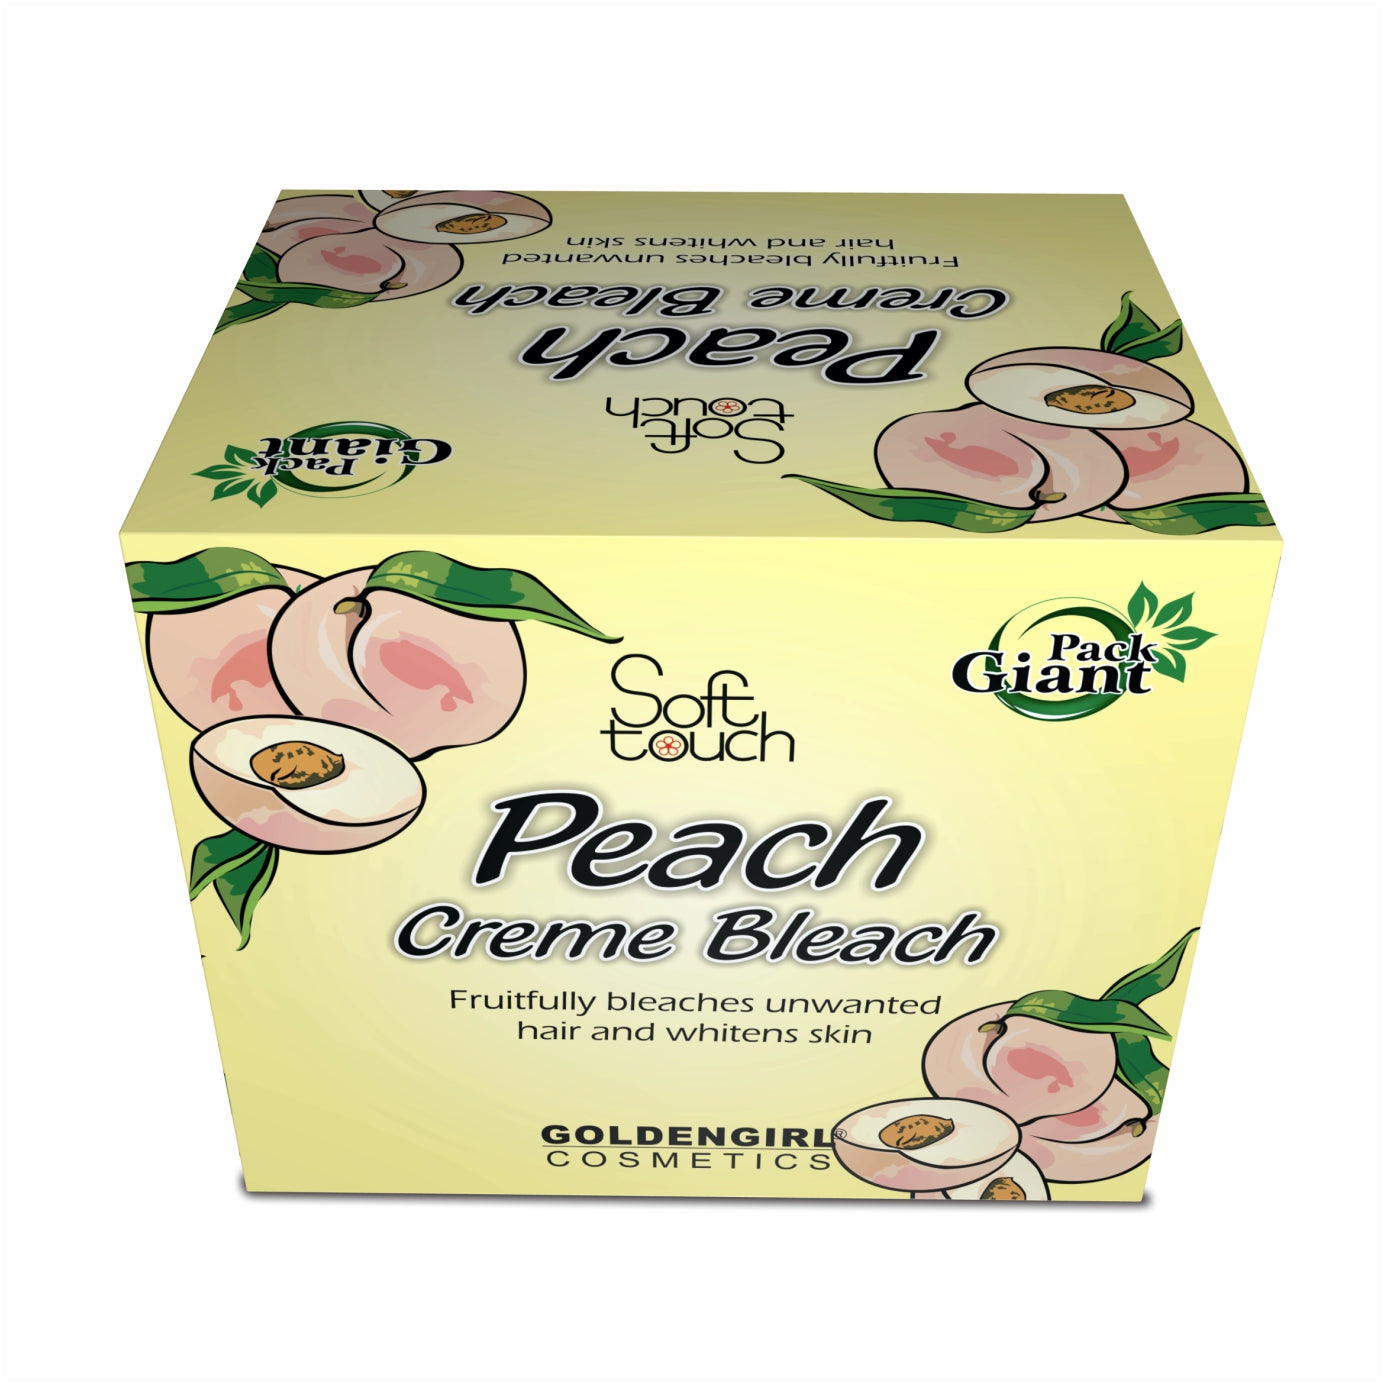 Peach Bleach Creme Giant Pack 1000gm